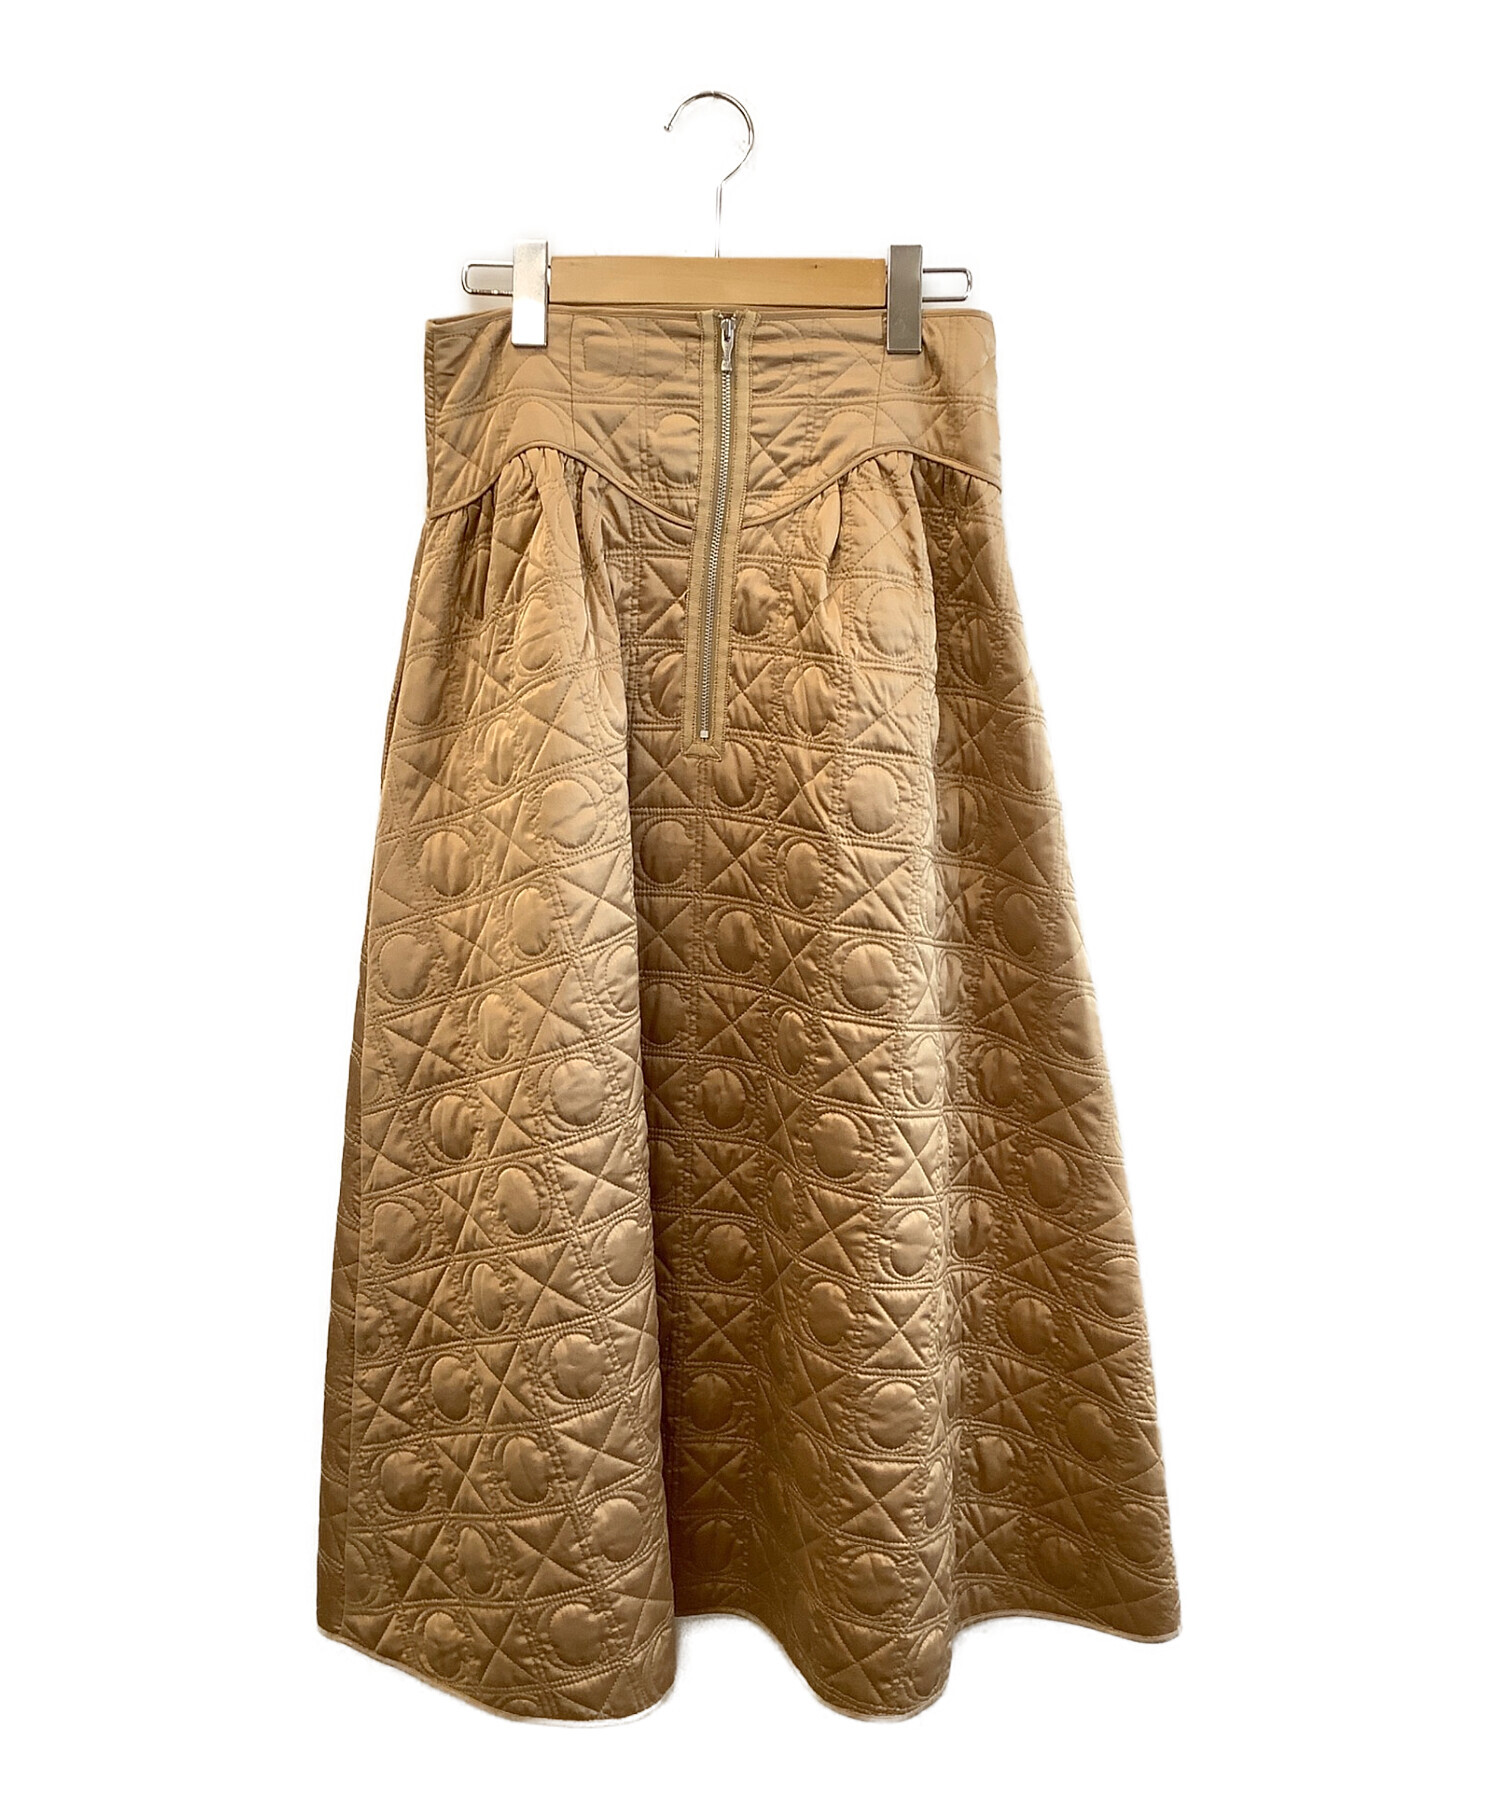 セルフォード/CELFORD オリジナルキルティングスカート